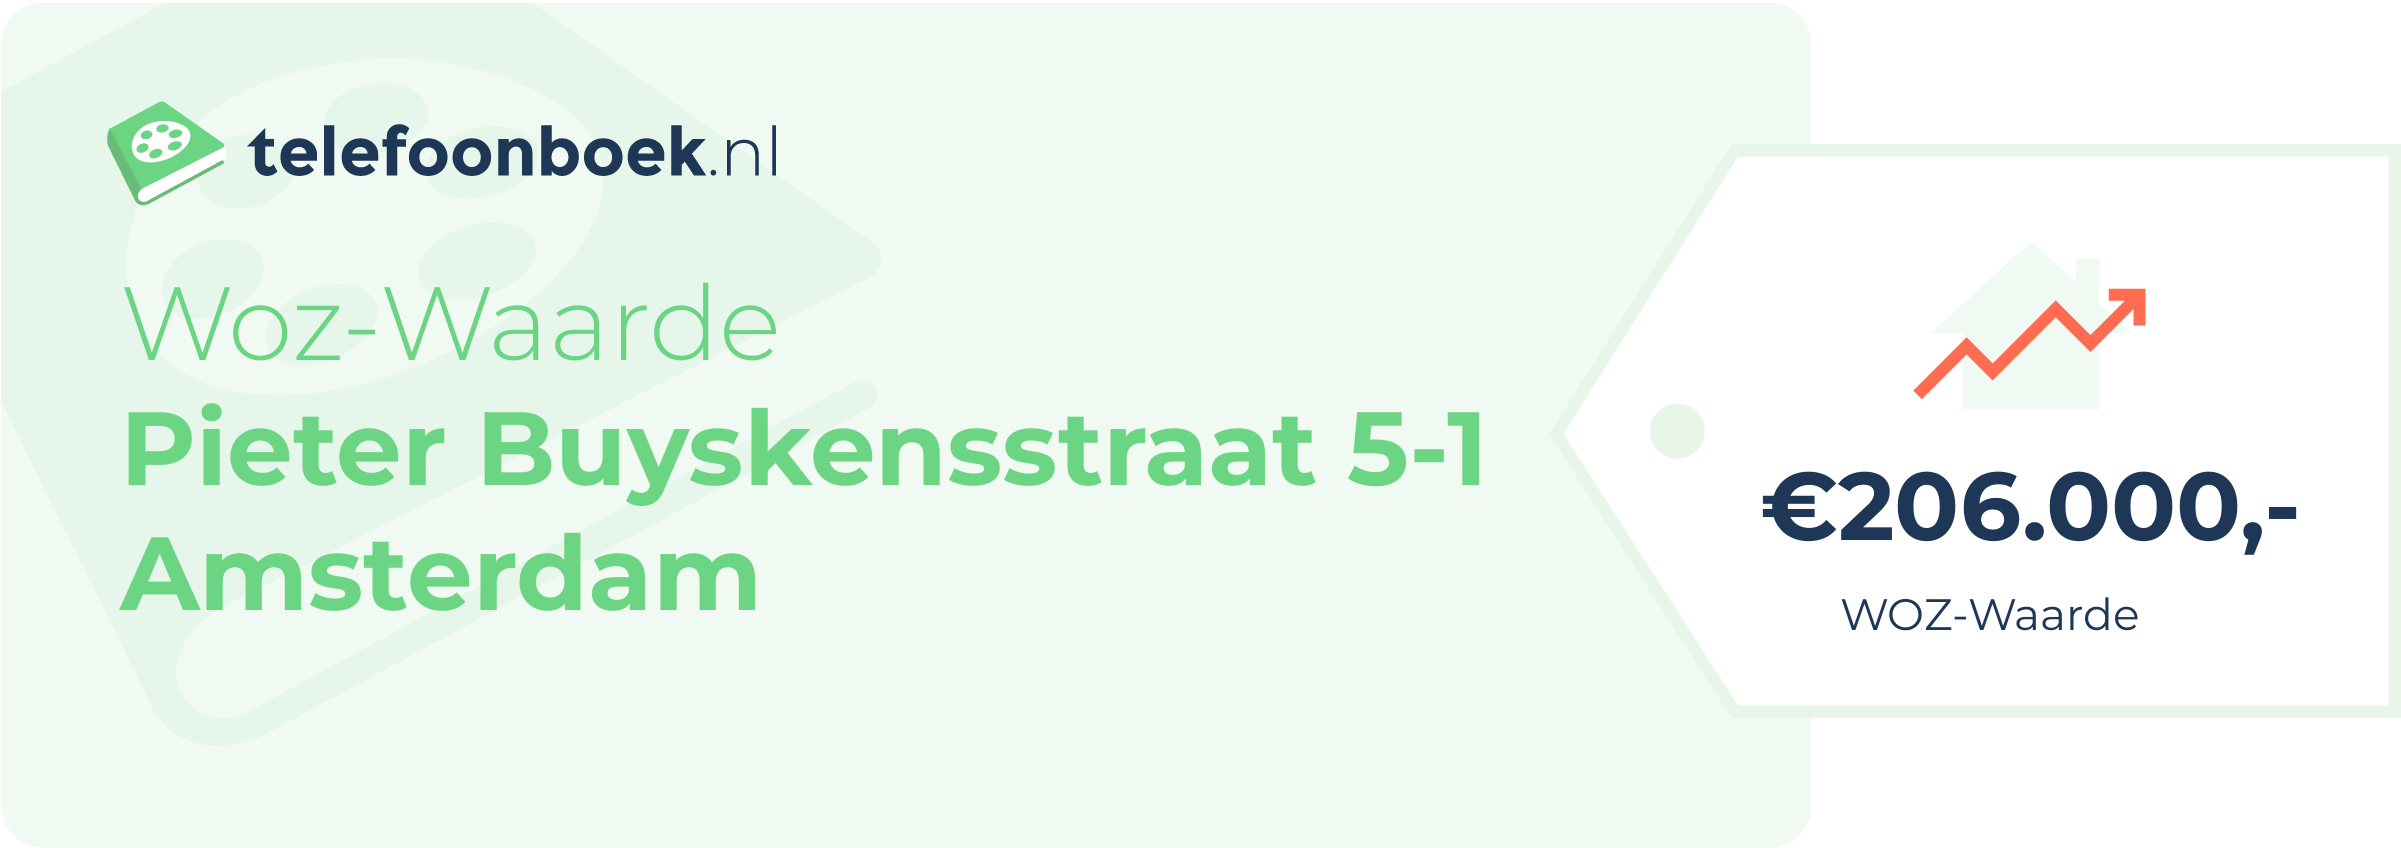 WOZ-waarde Pieter Buyskensstraat 5-1 Amsterdam